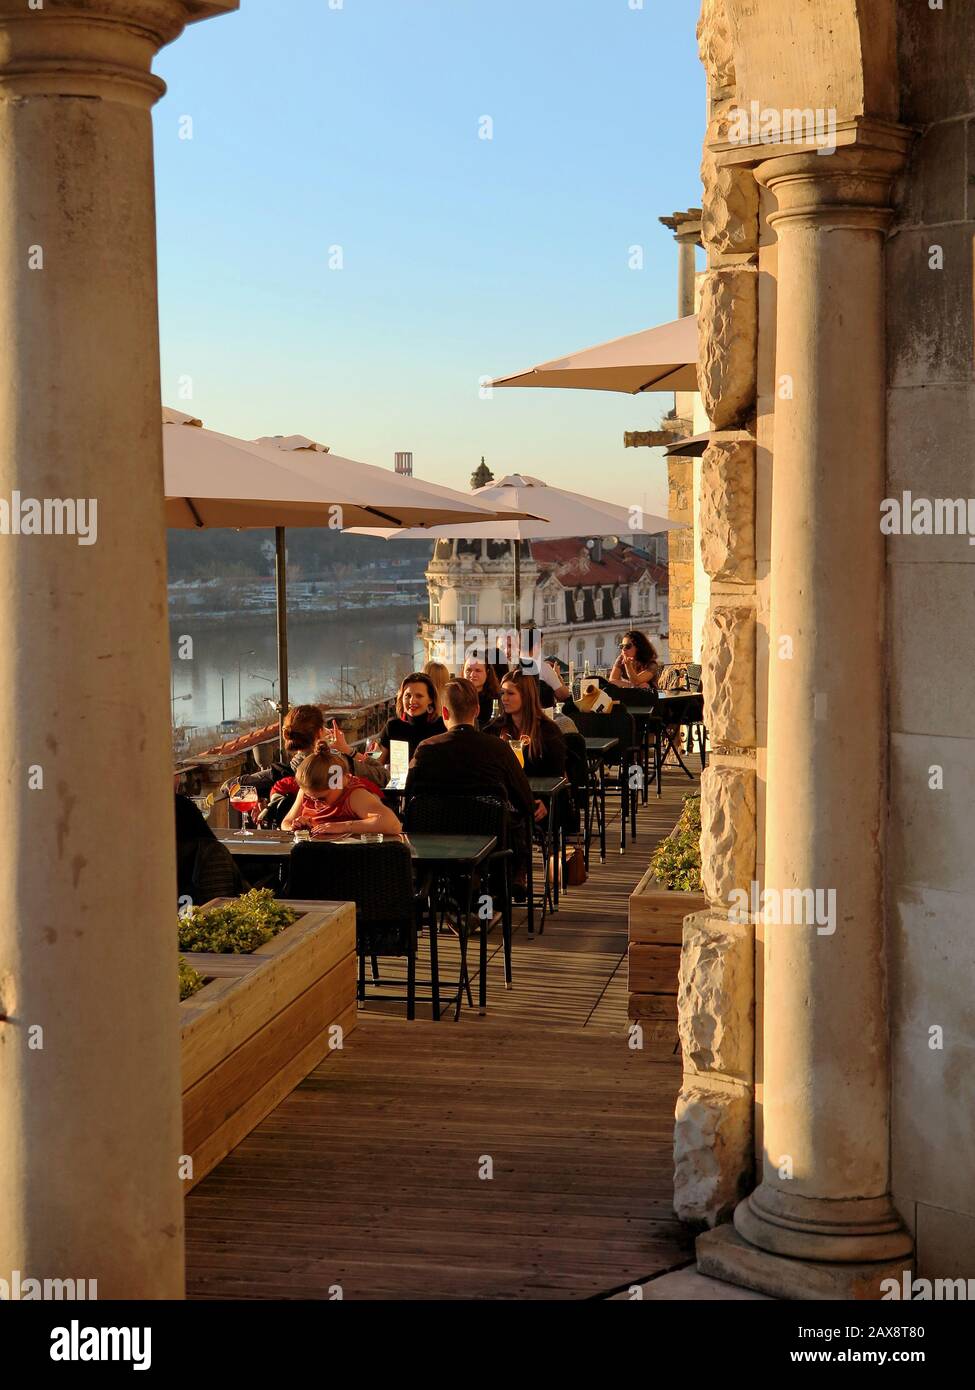 Grâce à l'arche, vous pouvez voir des gens apprécier le restaurant. La rivière et la rive opposée en arrière-plan. Banque D'Images